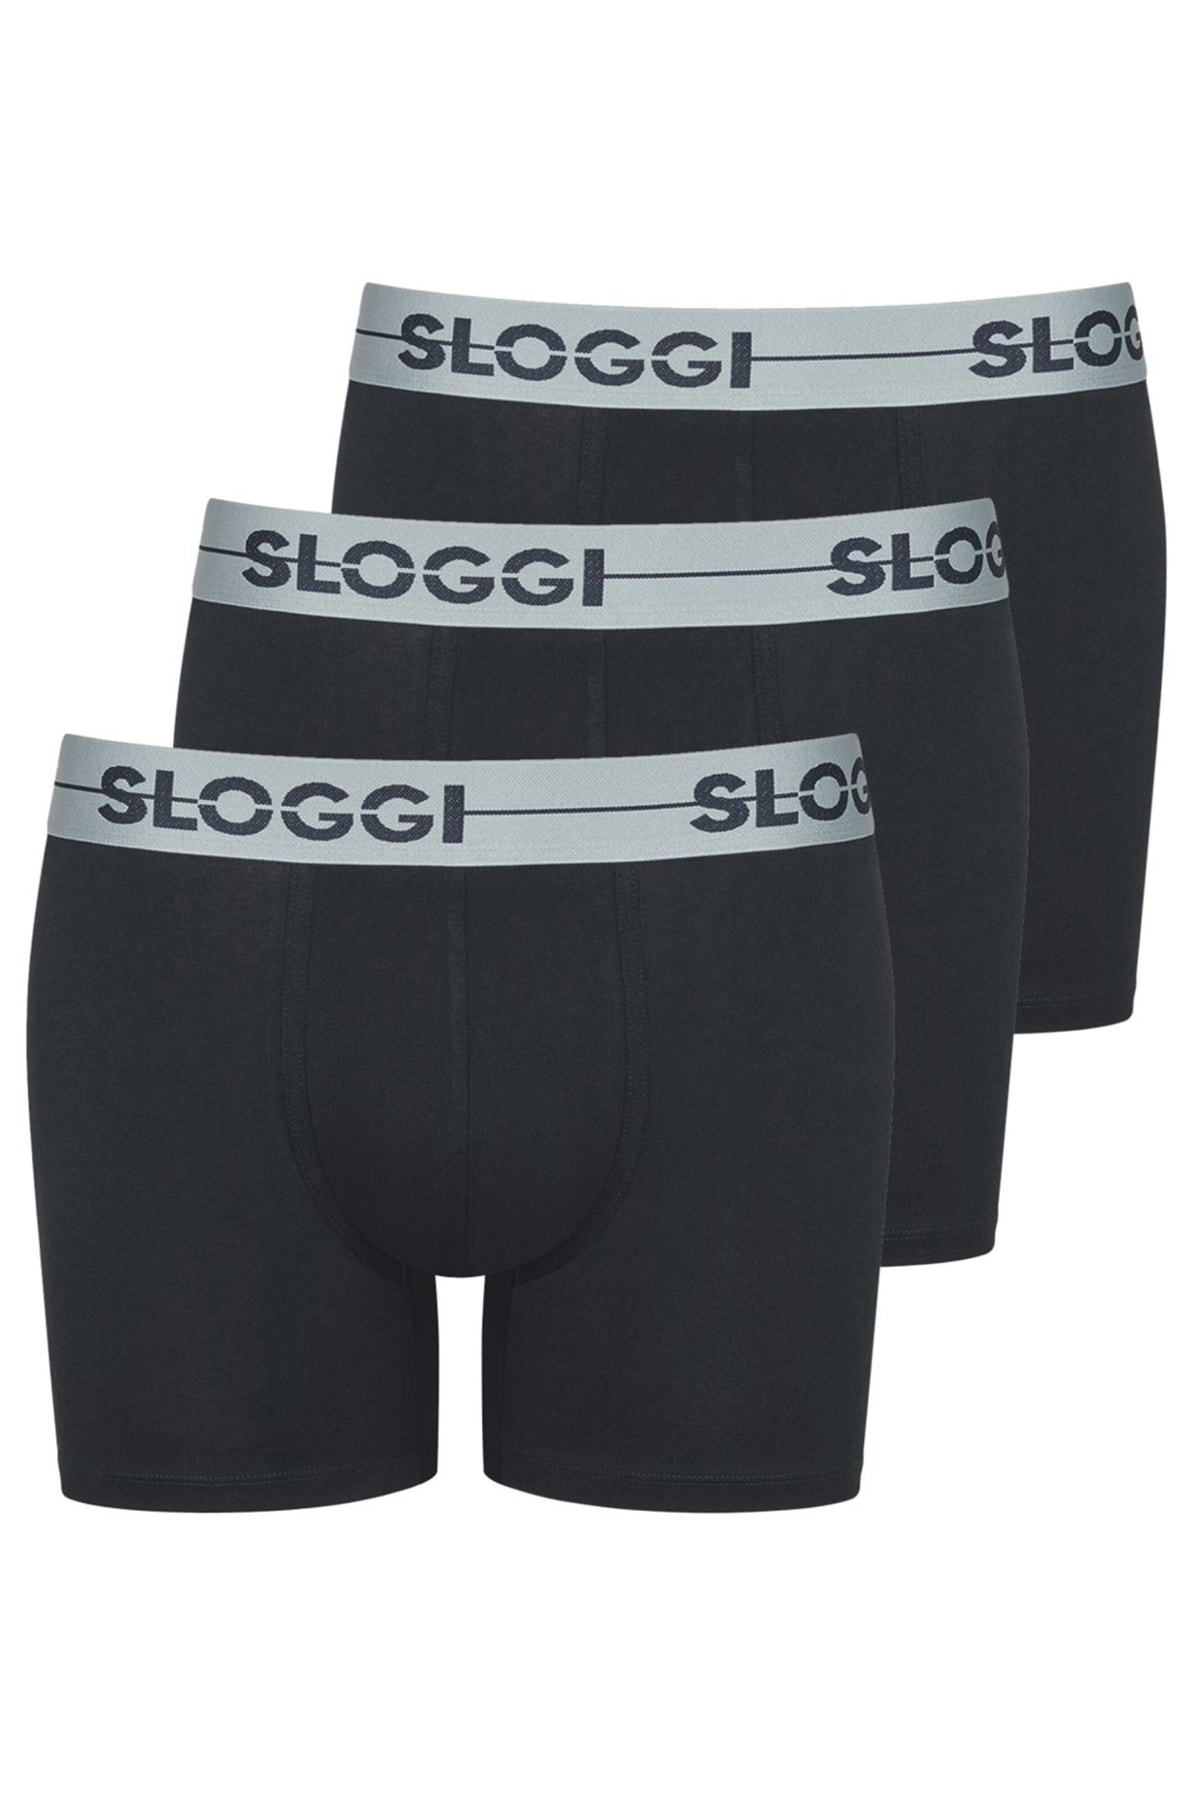 SLOGGI Boxershorts Schwarz 3er-Pack Fast ausverkauft